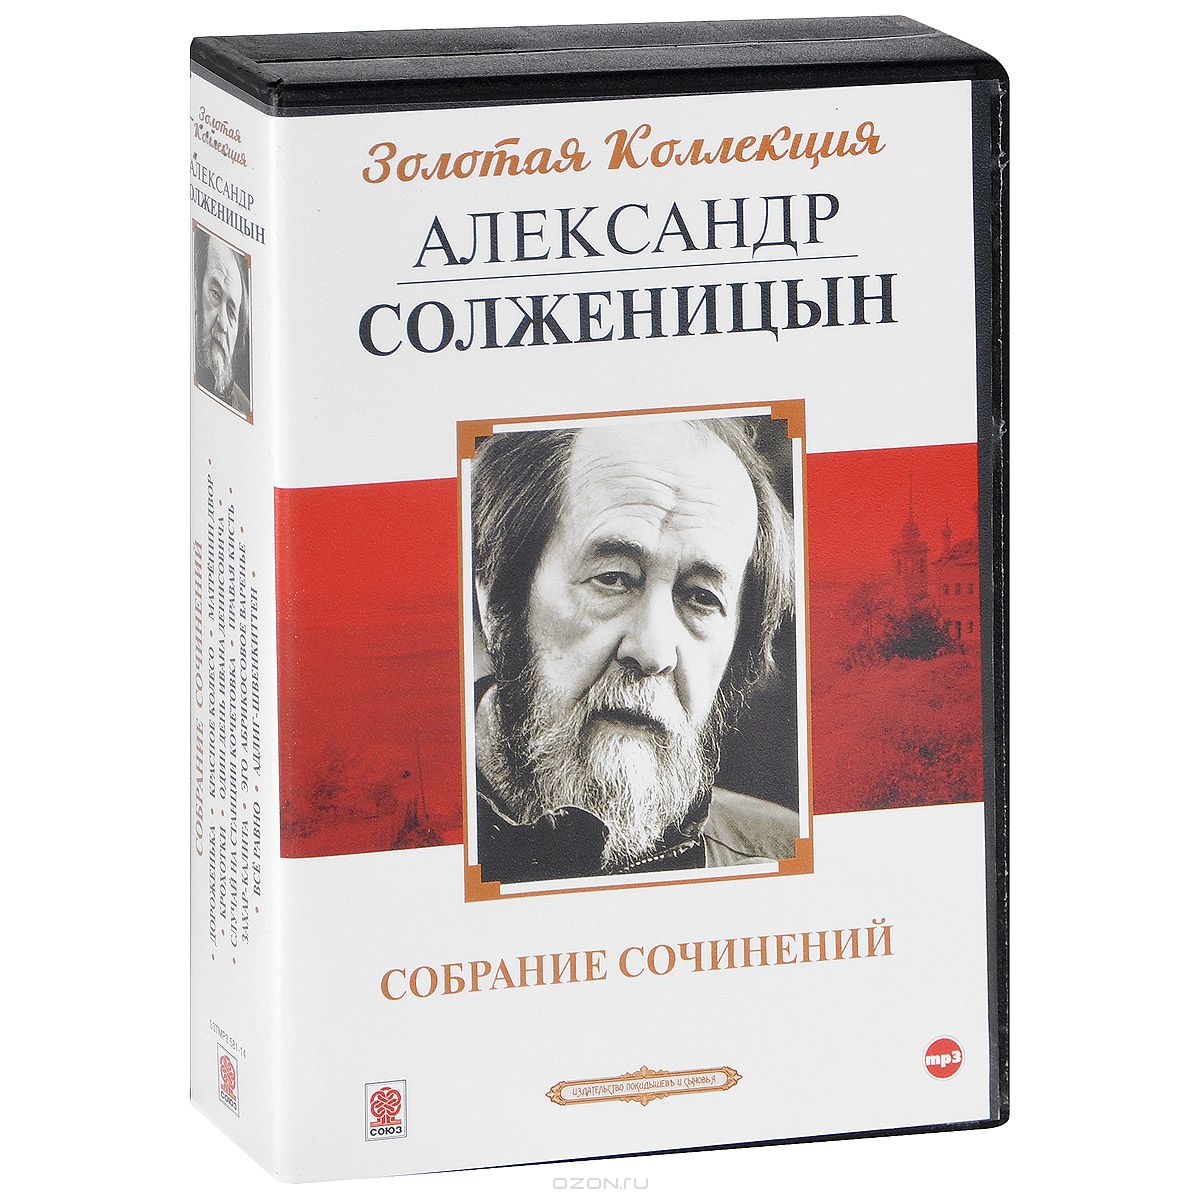 К произведениям солженицына относится. Книги Солженицына. Обложки книг Солженицына.